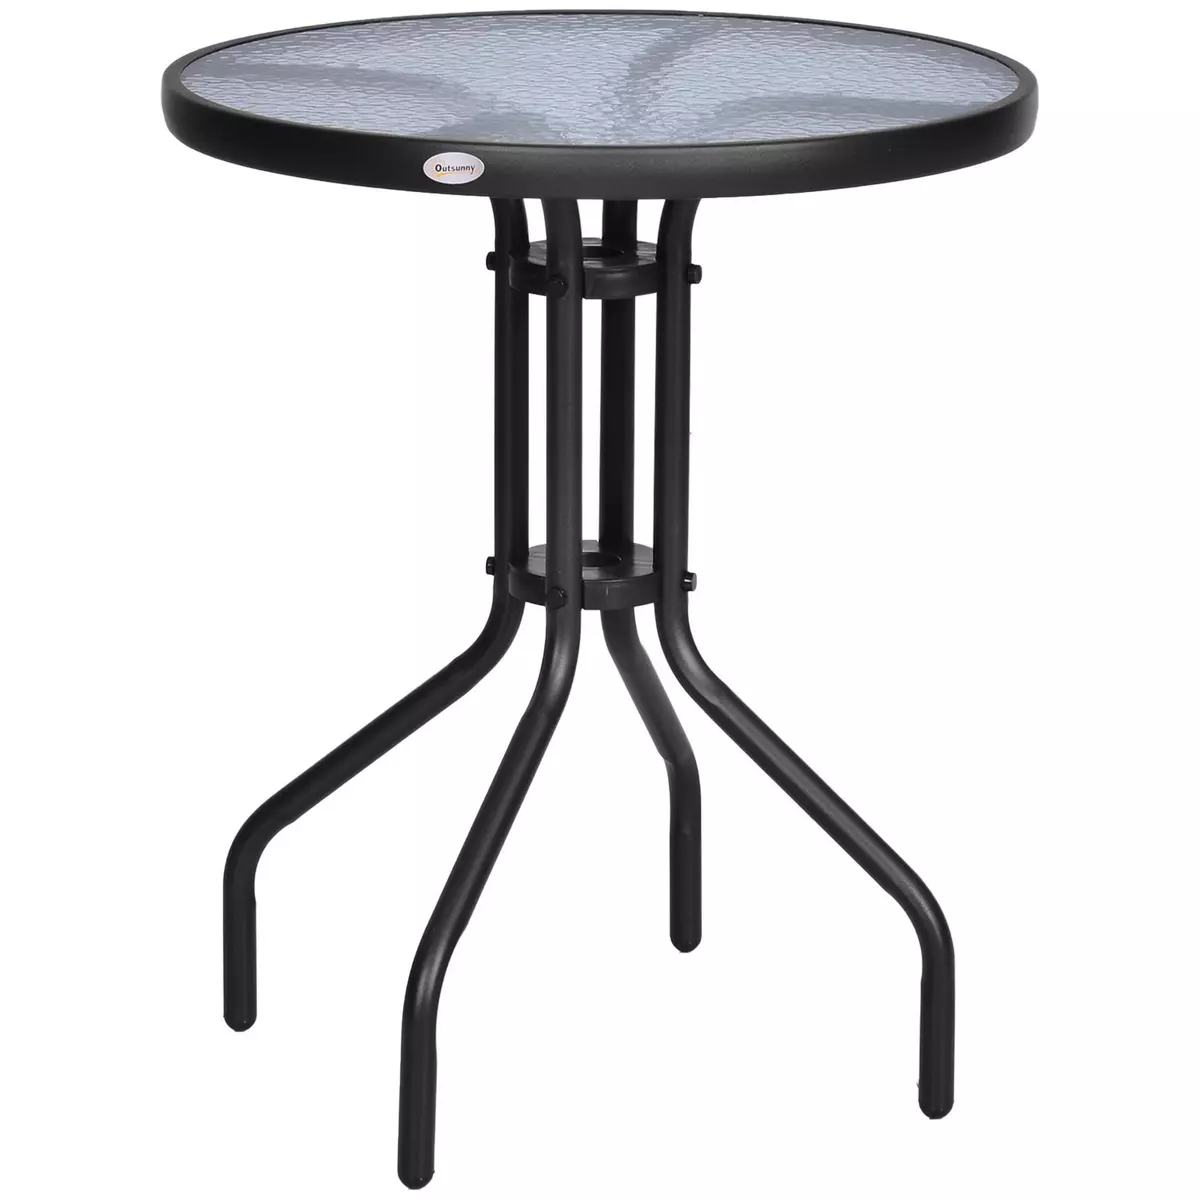 OUTSUNNY Table ronde bistro de jardin dim. Ø 60 x 70H cm métal époxy anticorrosion noir plateau verre trempé